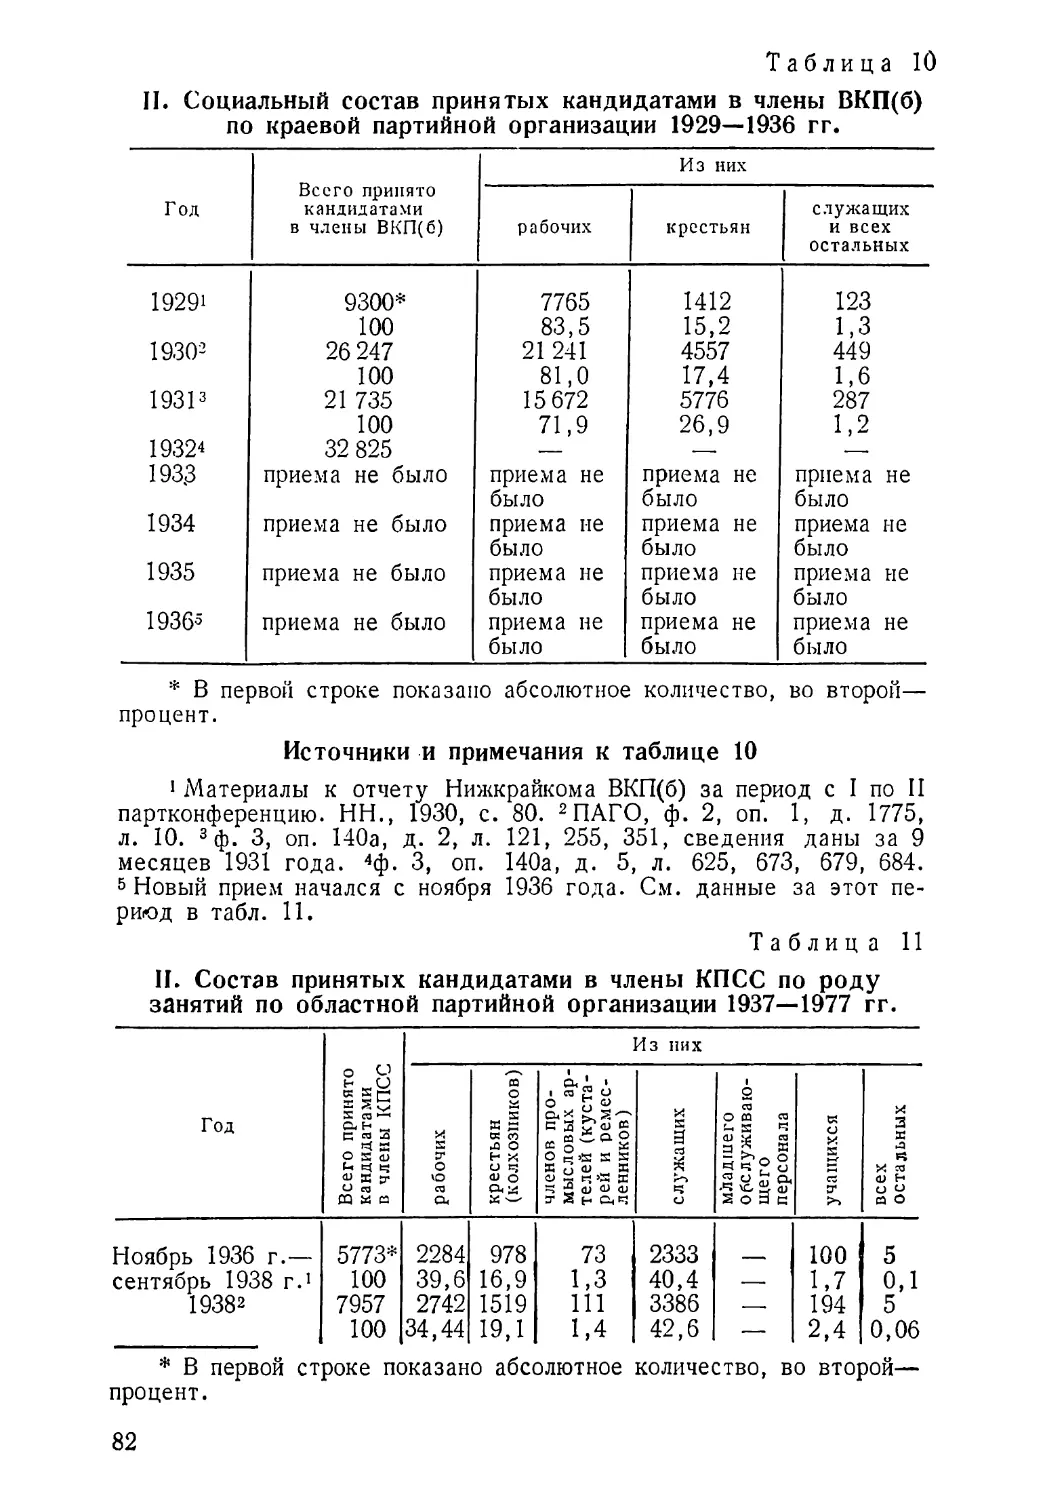 1929—1936 гг. Таблица 10
Состав принятых кандидатами в члены КПСС по роду занятий 1937—1977 гг. Таблица 11